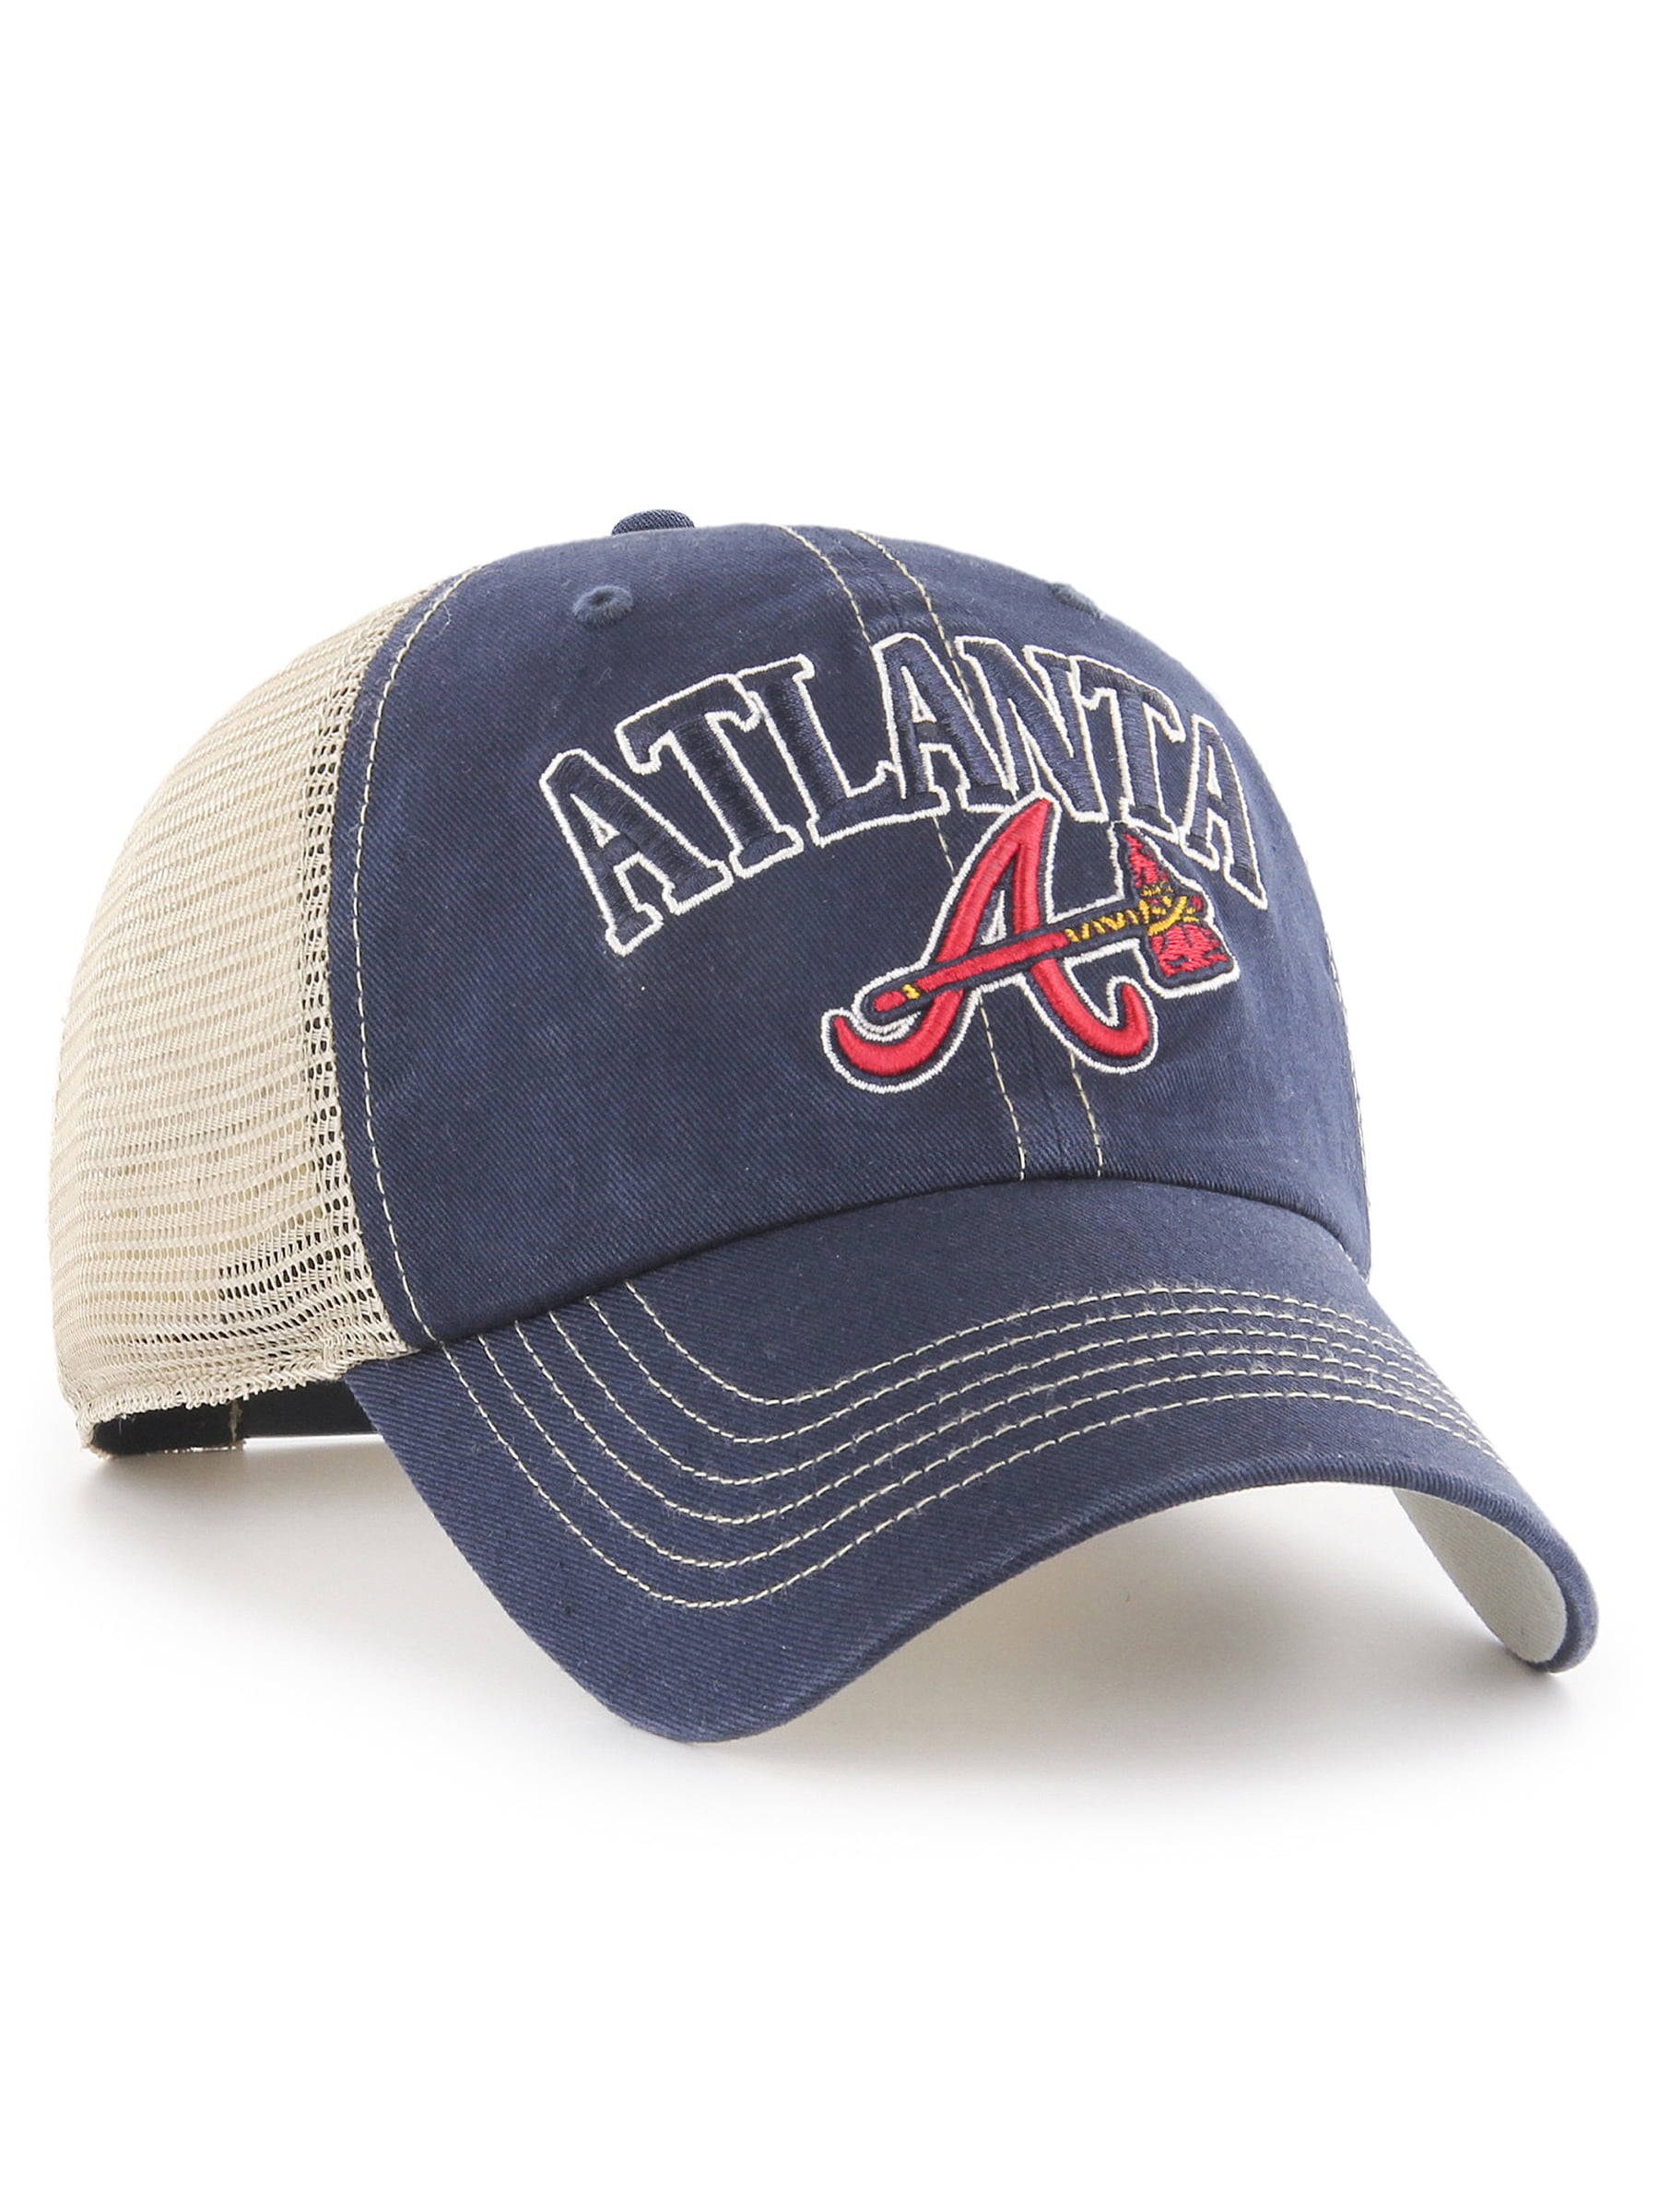 MLB Atlanta Braves Completion Adjustable Cap/Hat by Fan Favorite